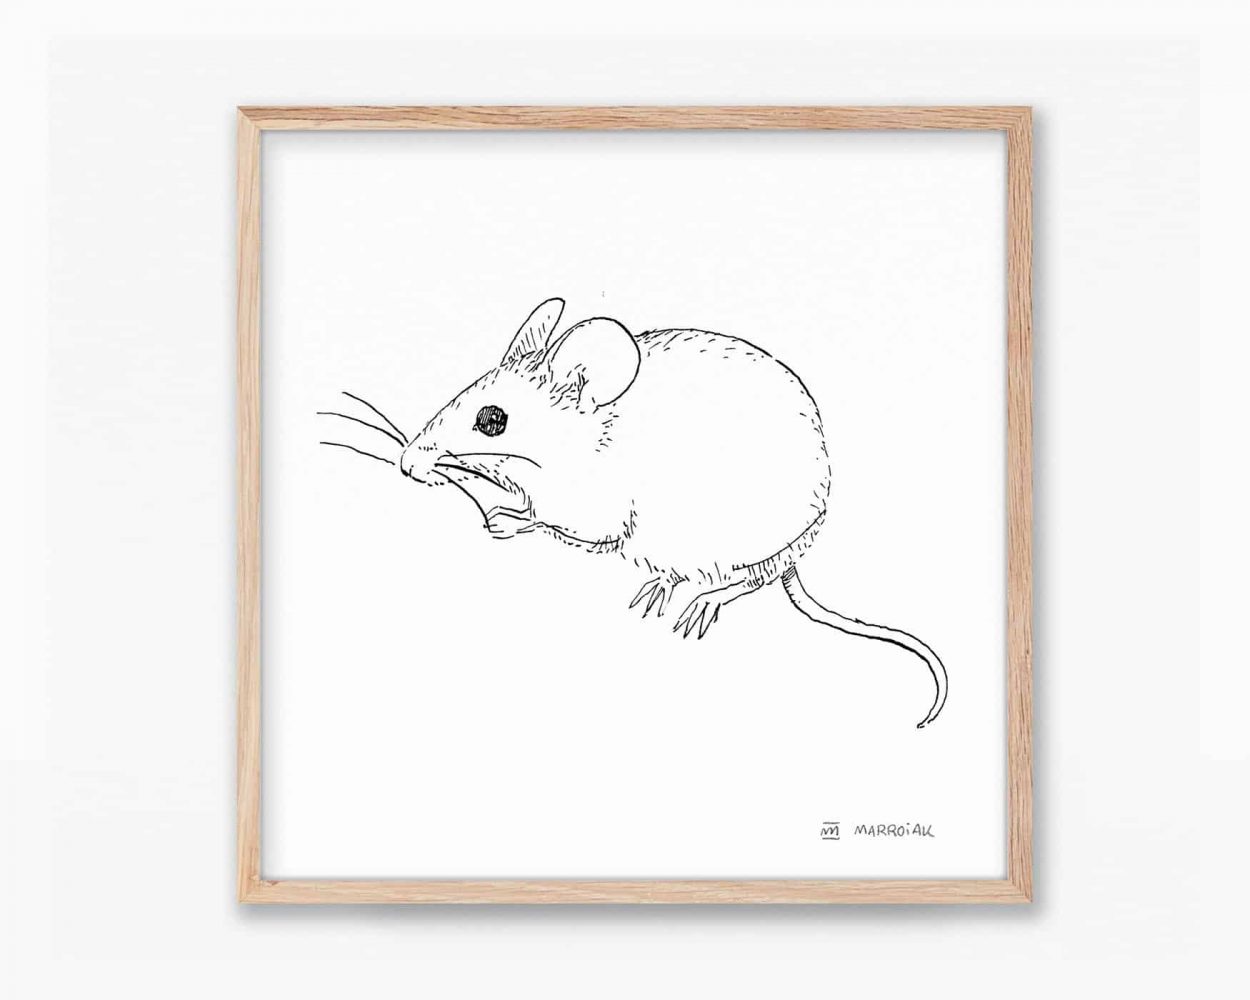 Cuadros de naturaleza de valencia y la península ibérica. Lámina para enmarcar con una ilustración en blanco y negro de un ratón moruno (Mus Spretus). Dibujo en tinta sobre papel.